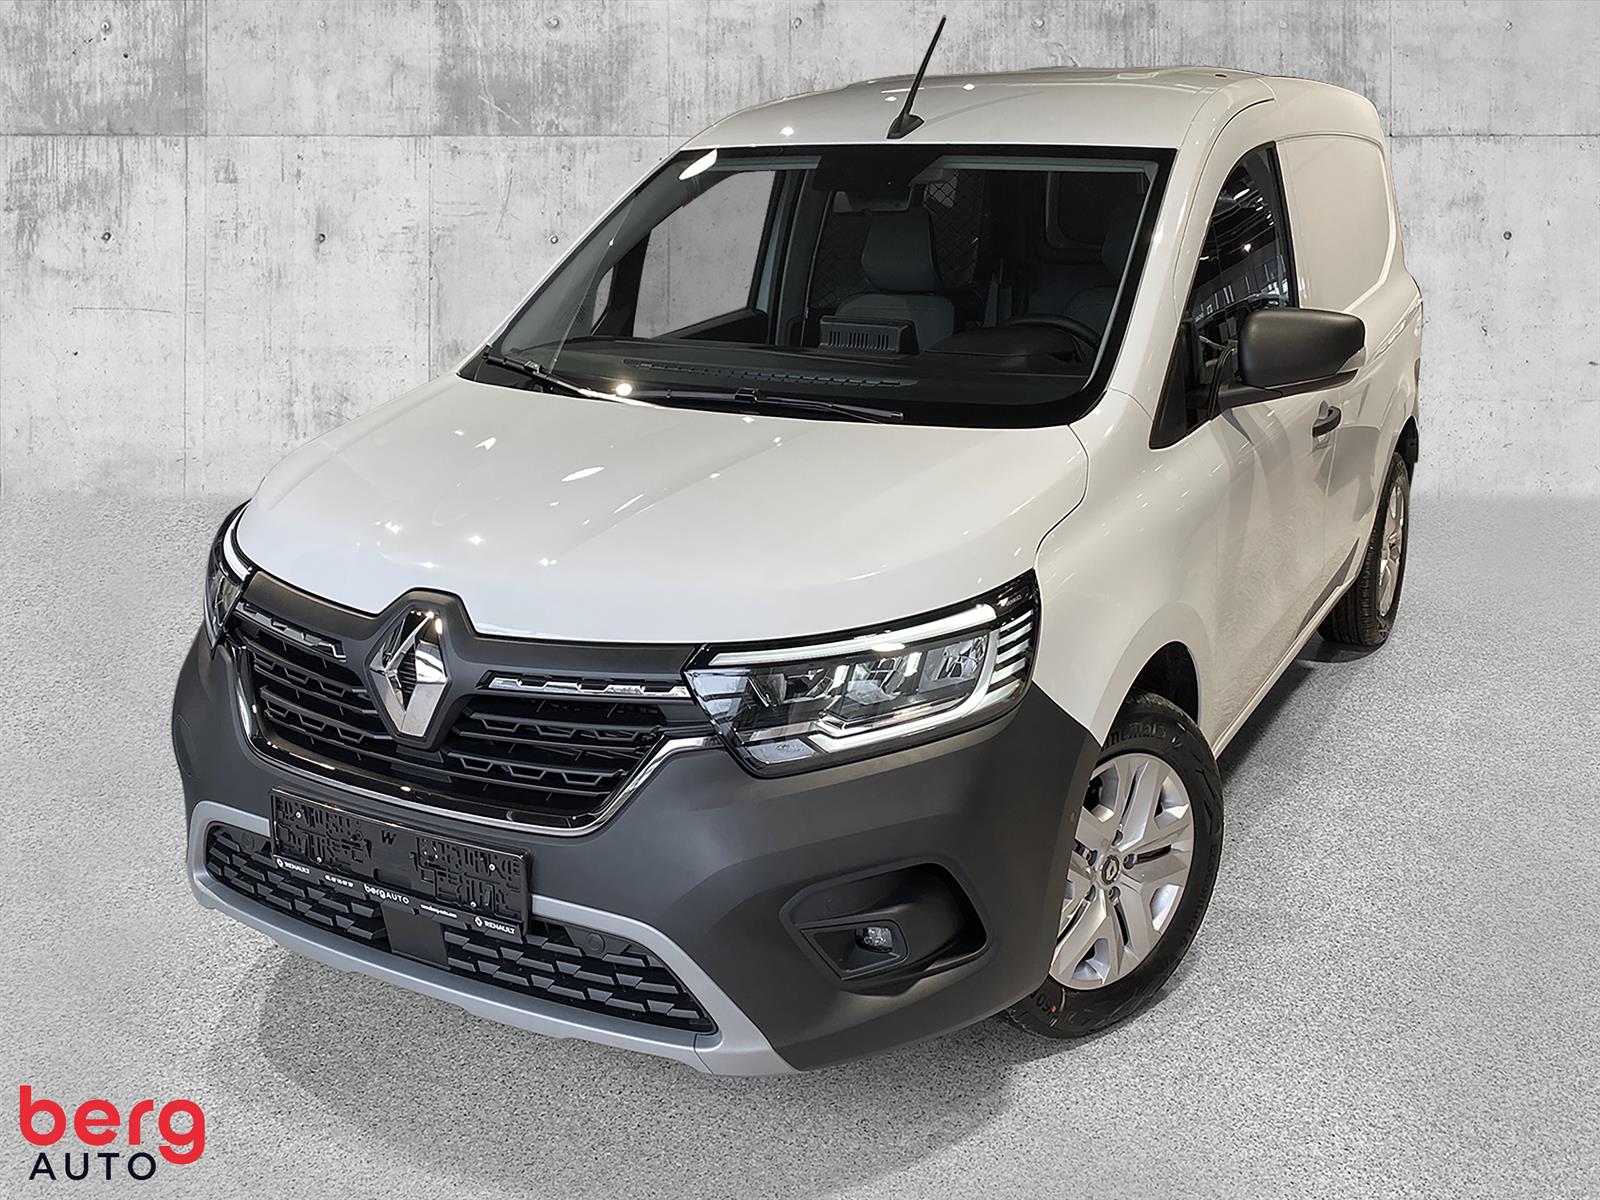 Renault Kangoo Maxi Automat
Innskudd kr 0,-
Leasing fra kr 2593,- per måned